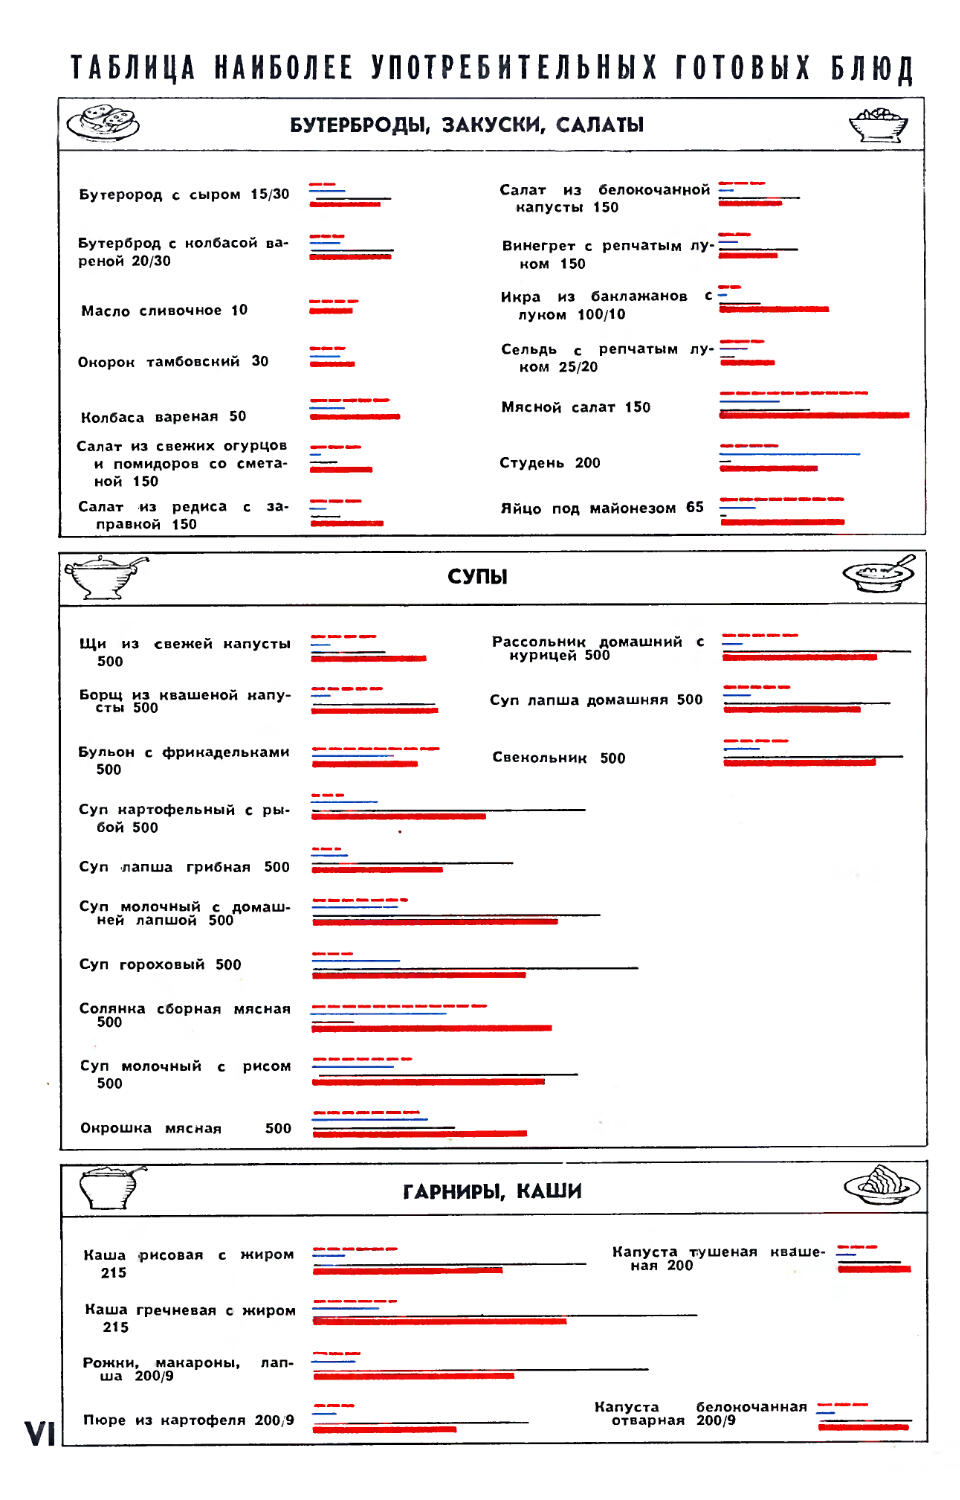 Рис. О. Рево — Таблица наиболее употребительных готовых блюд для расчета калорийности по В. И. Воробьеву.